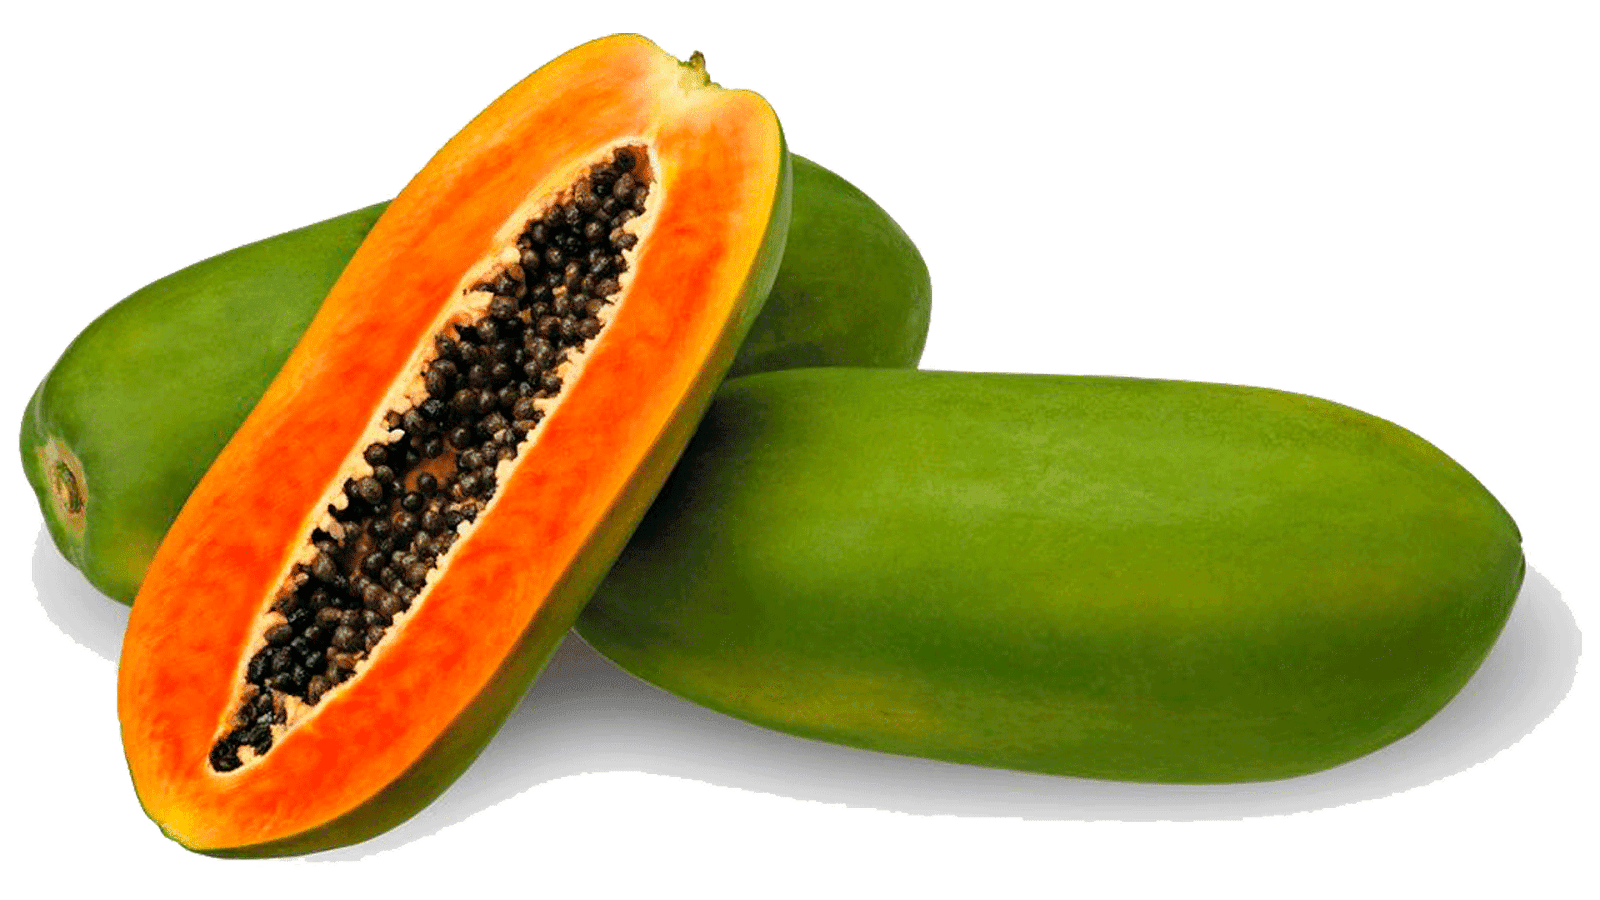 Fresh Papaya Photos Half Free Download Image PNG Image